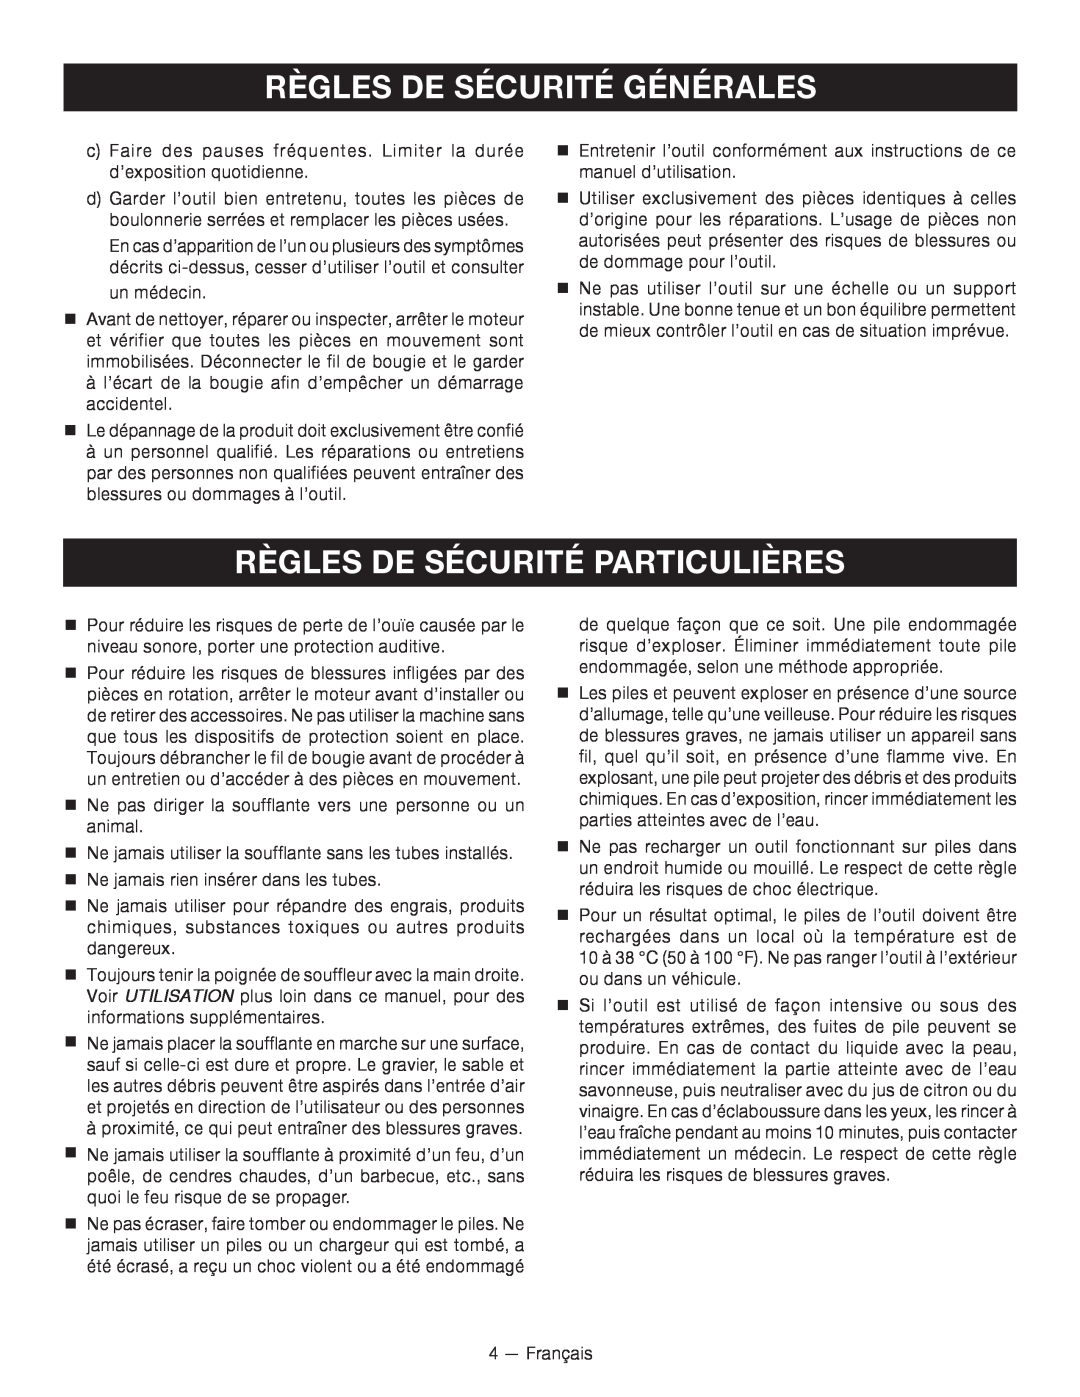 Ryobi RY09605 manuel dutilisation Règles De Sécurité Particulières, Règles De Sécurité Générales 